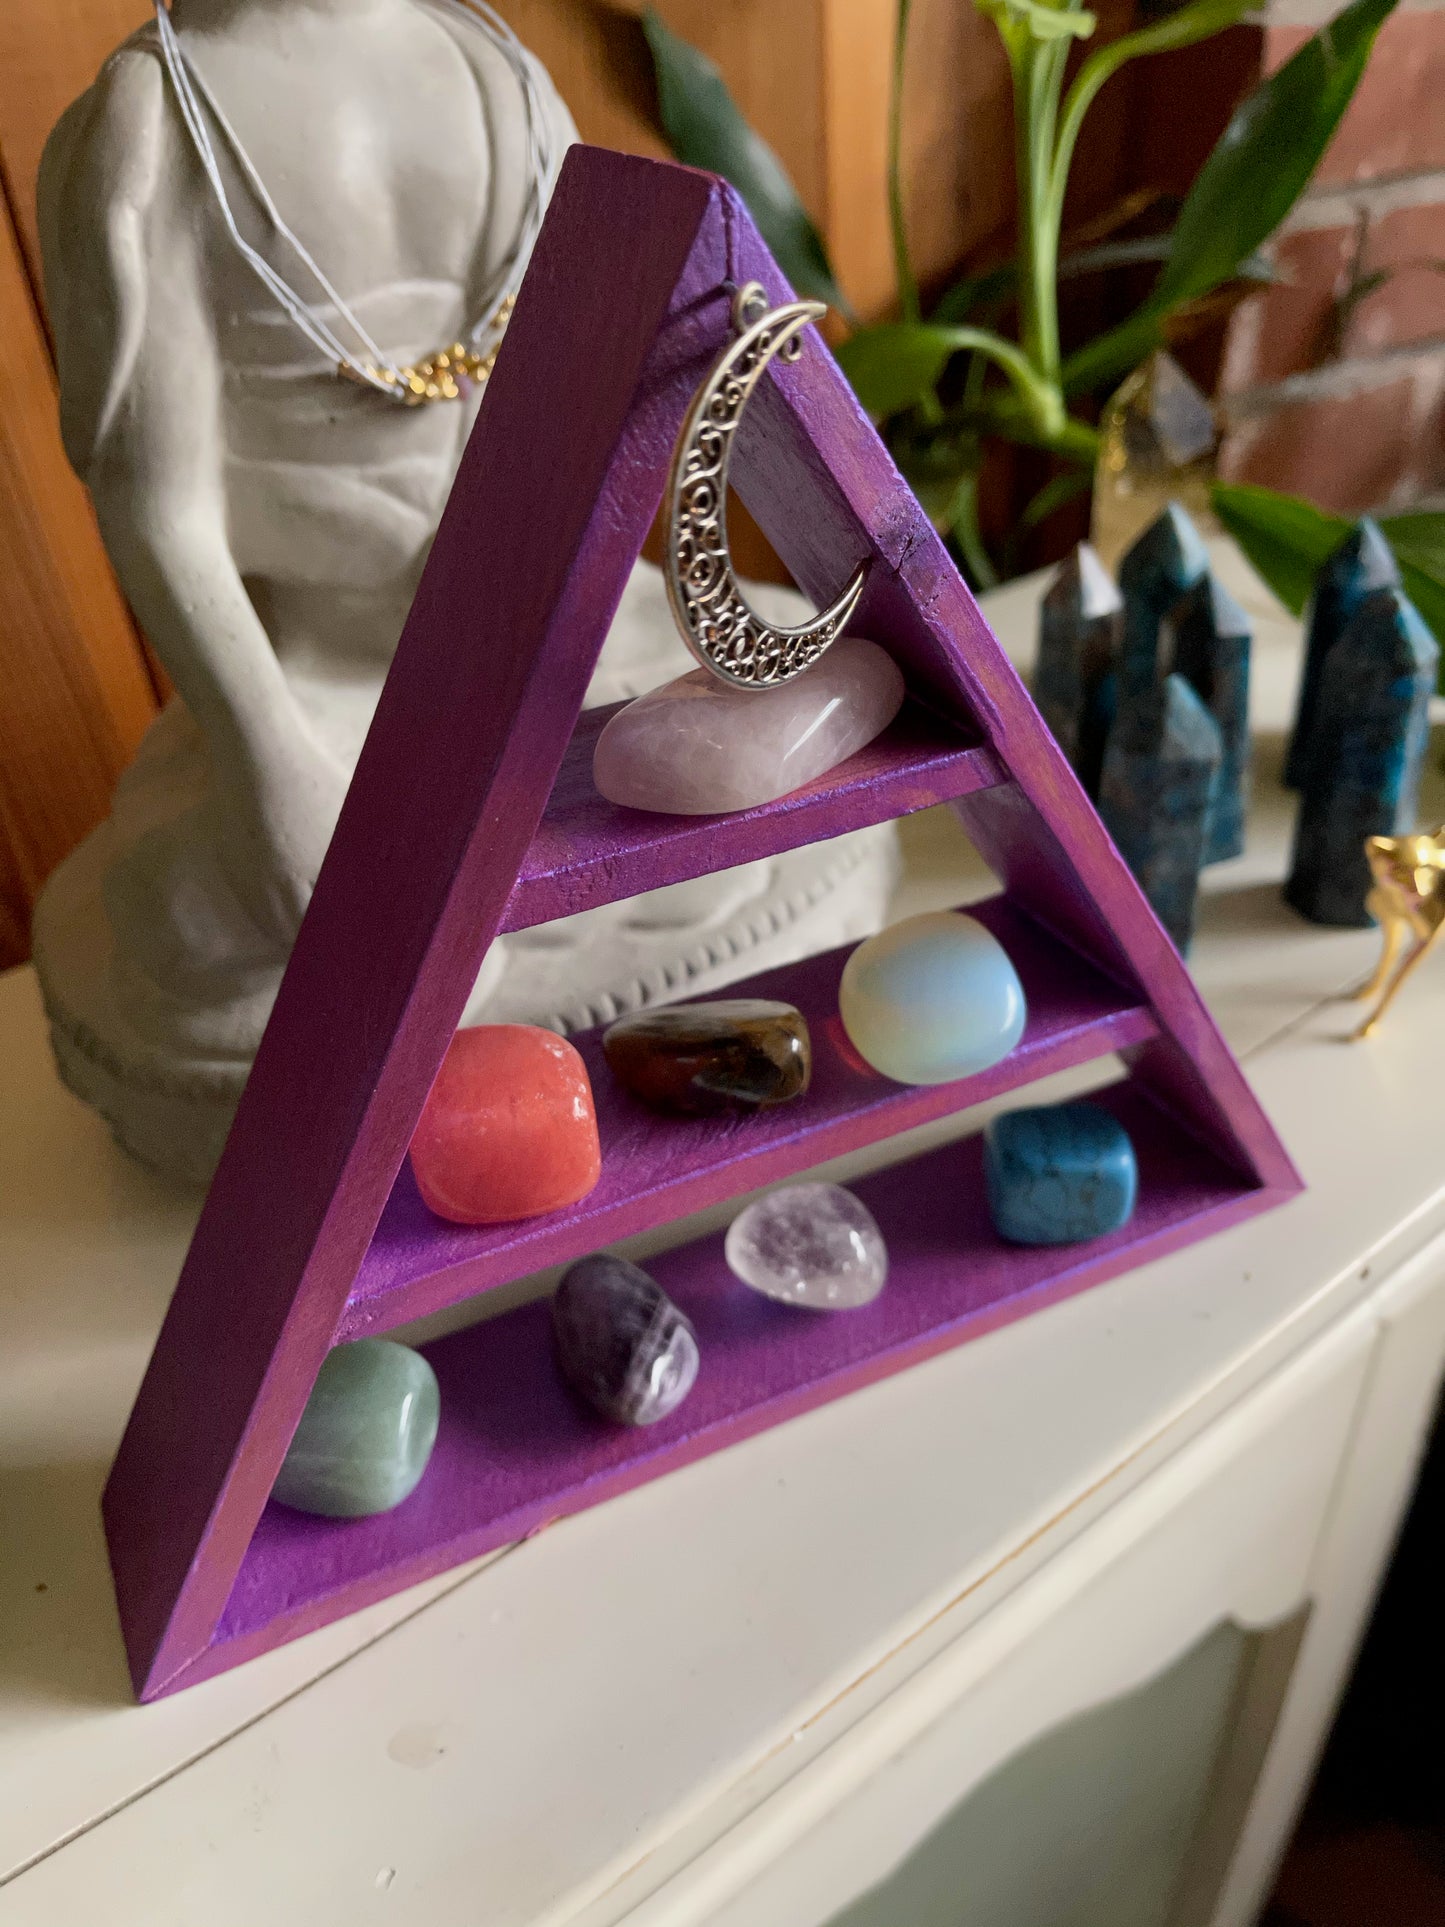 Triangle "JOY" Shelf, Triangle Shelf Gift Sets